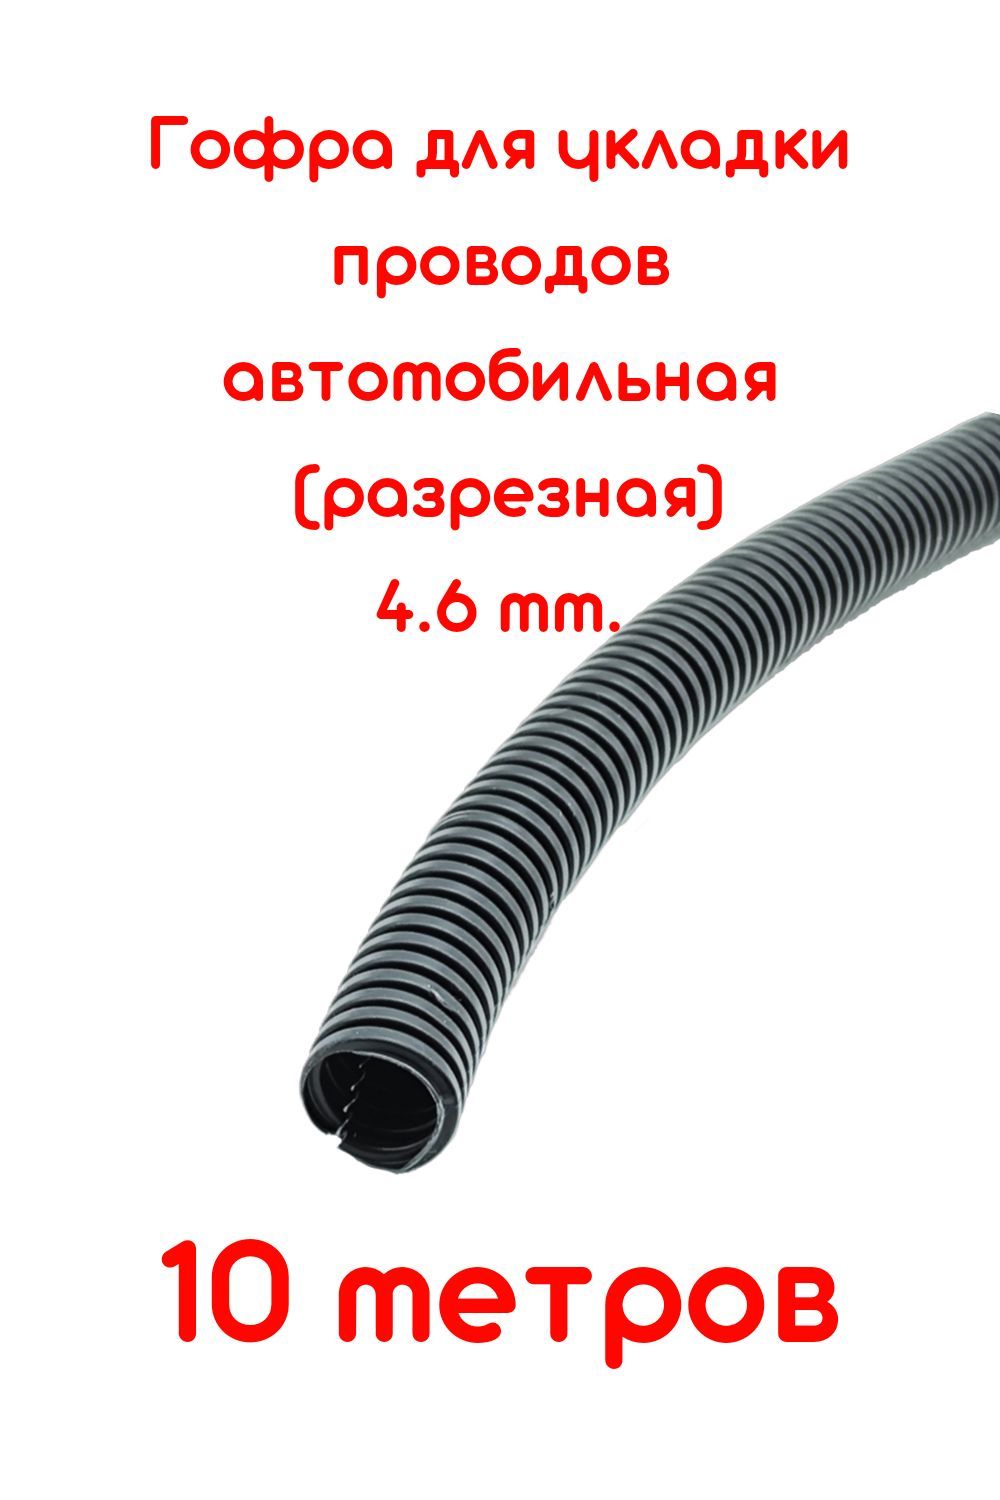 ГофрадляукладкипроводовD4,6mmразрезная(автомобильная/универсальная)10метров